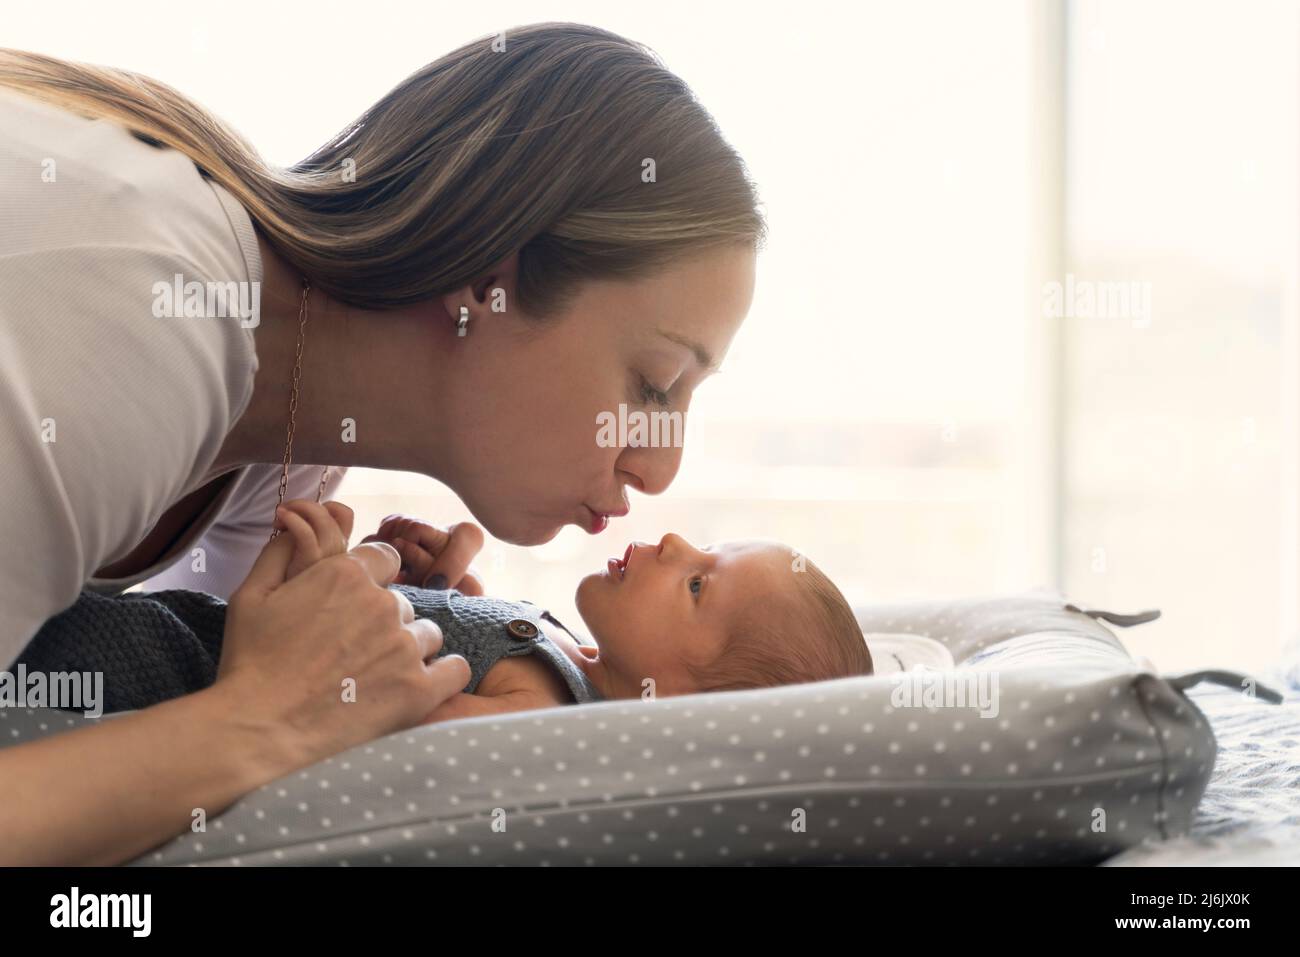 Die junge Mutter küsst ihr neugeborenes Baby auf dem Bett in der Nähe des Fensters Stockfoto